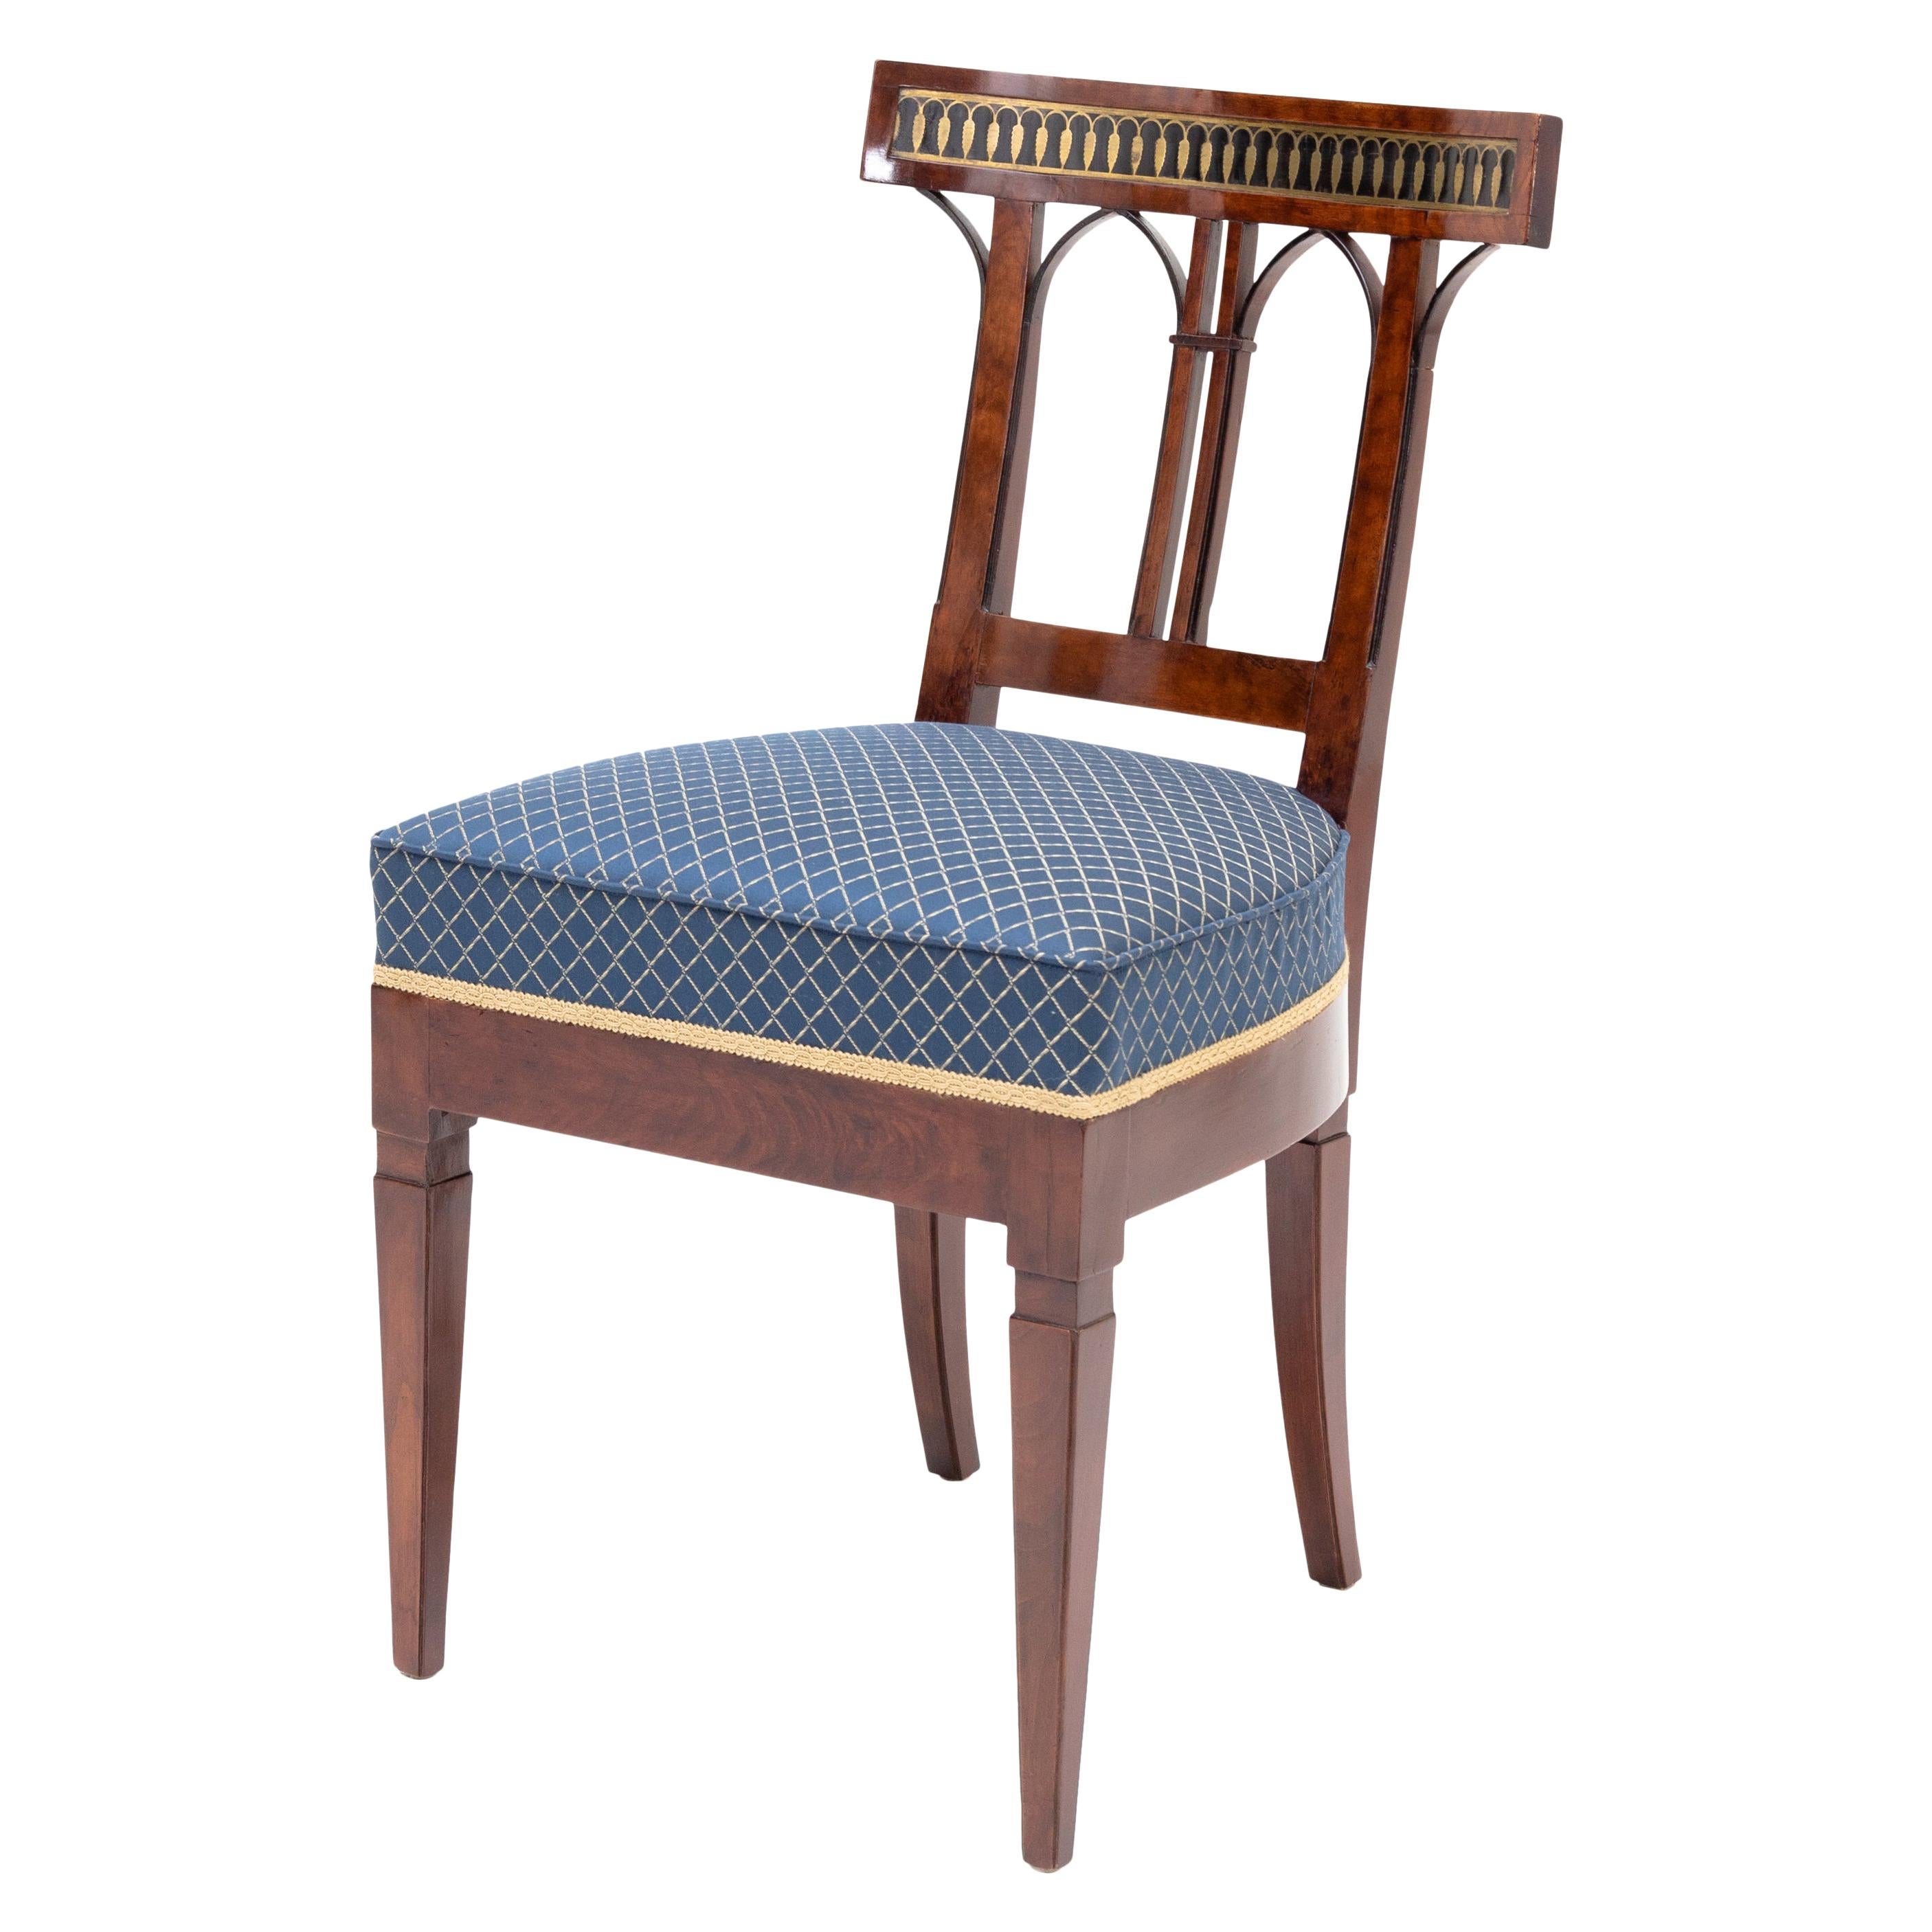 Neoklassizistischer Stuhl, Deutschland, frühes 19. Jahrhundert